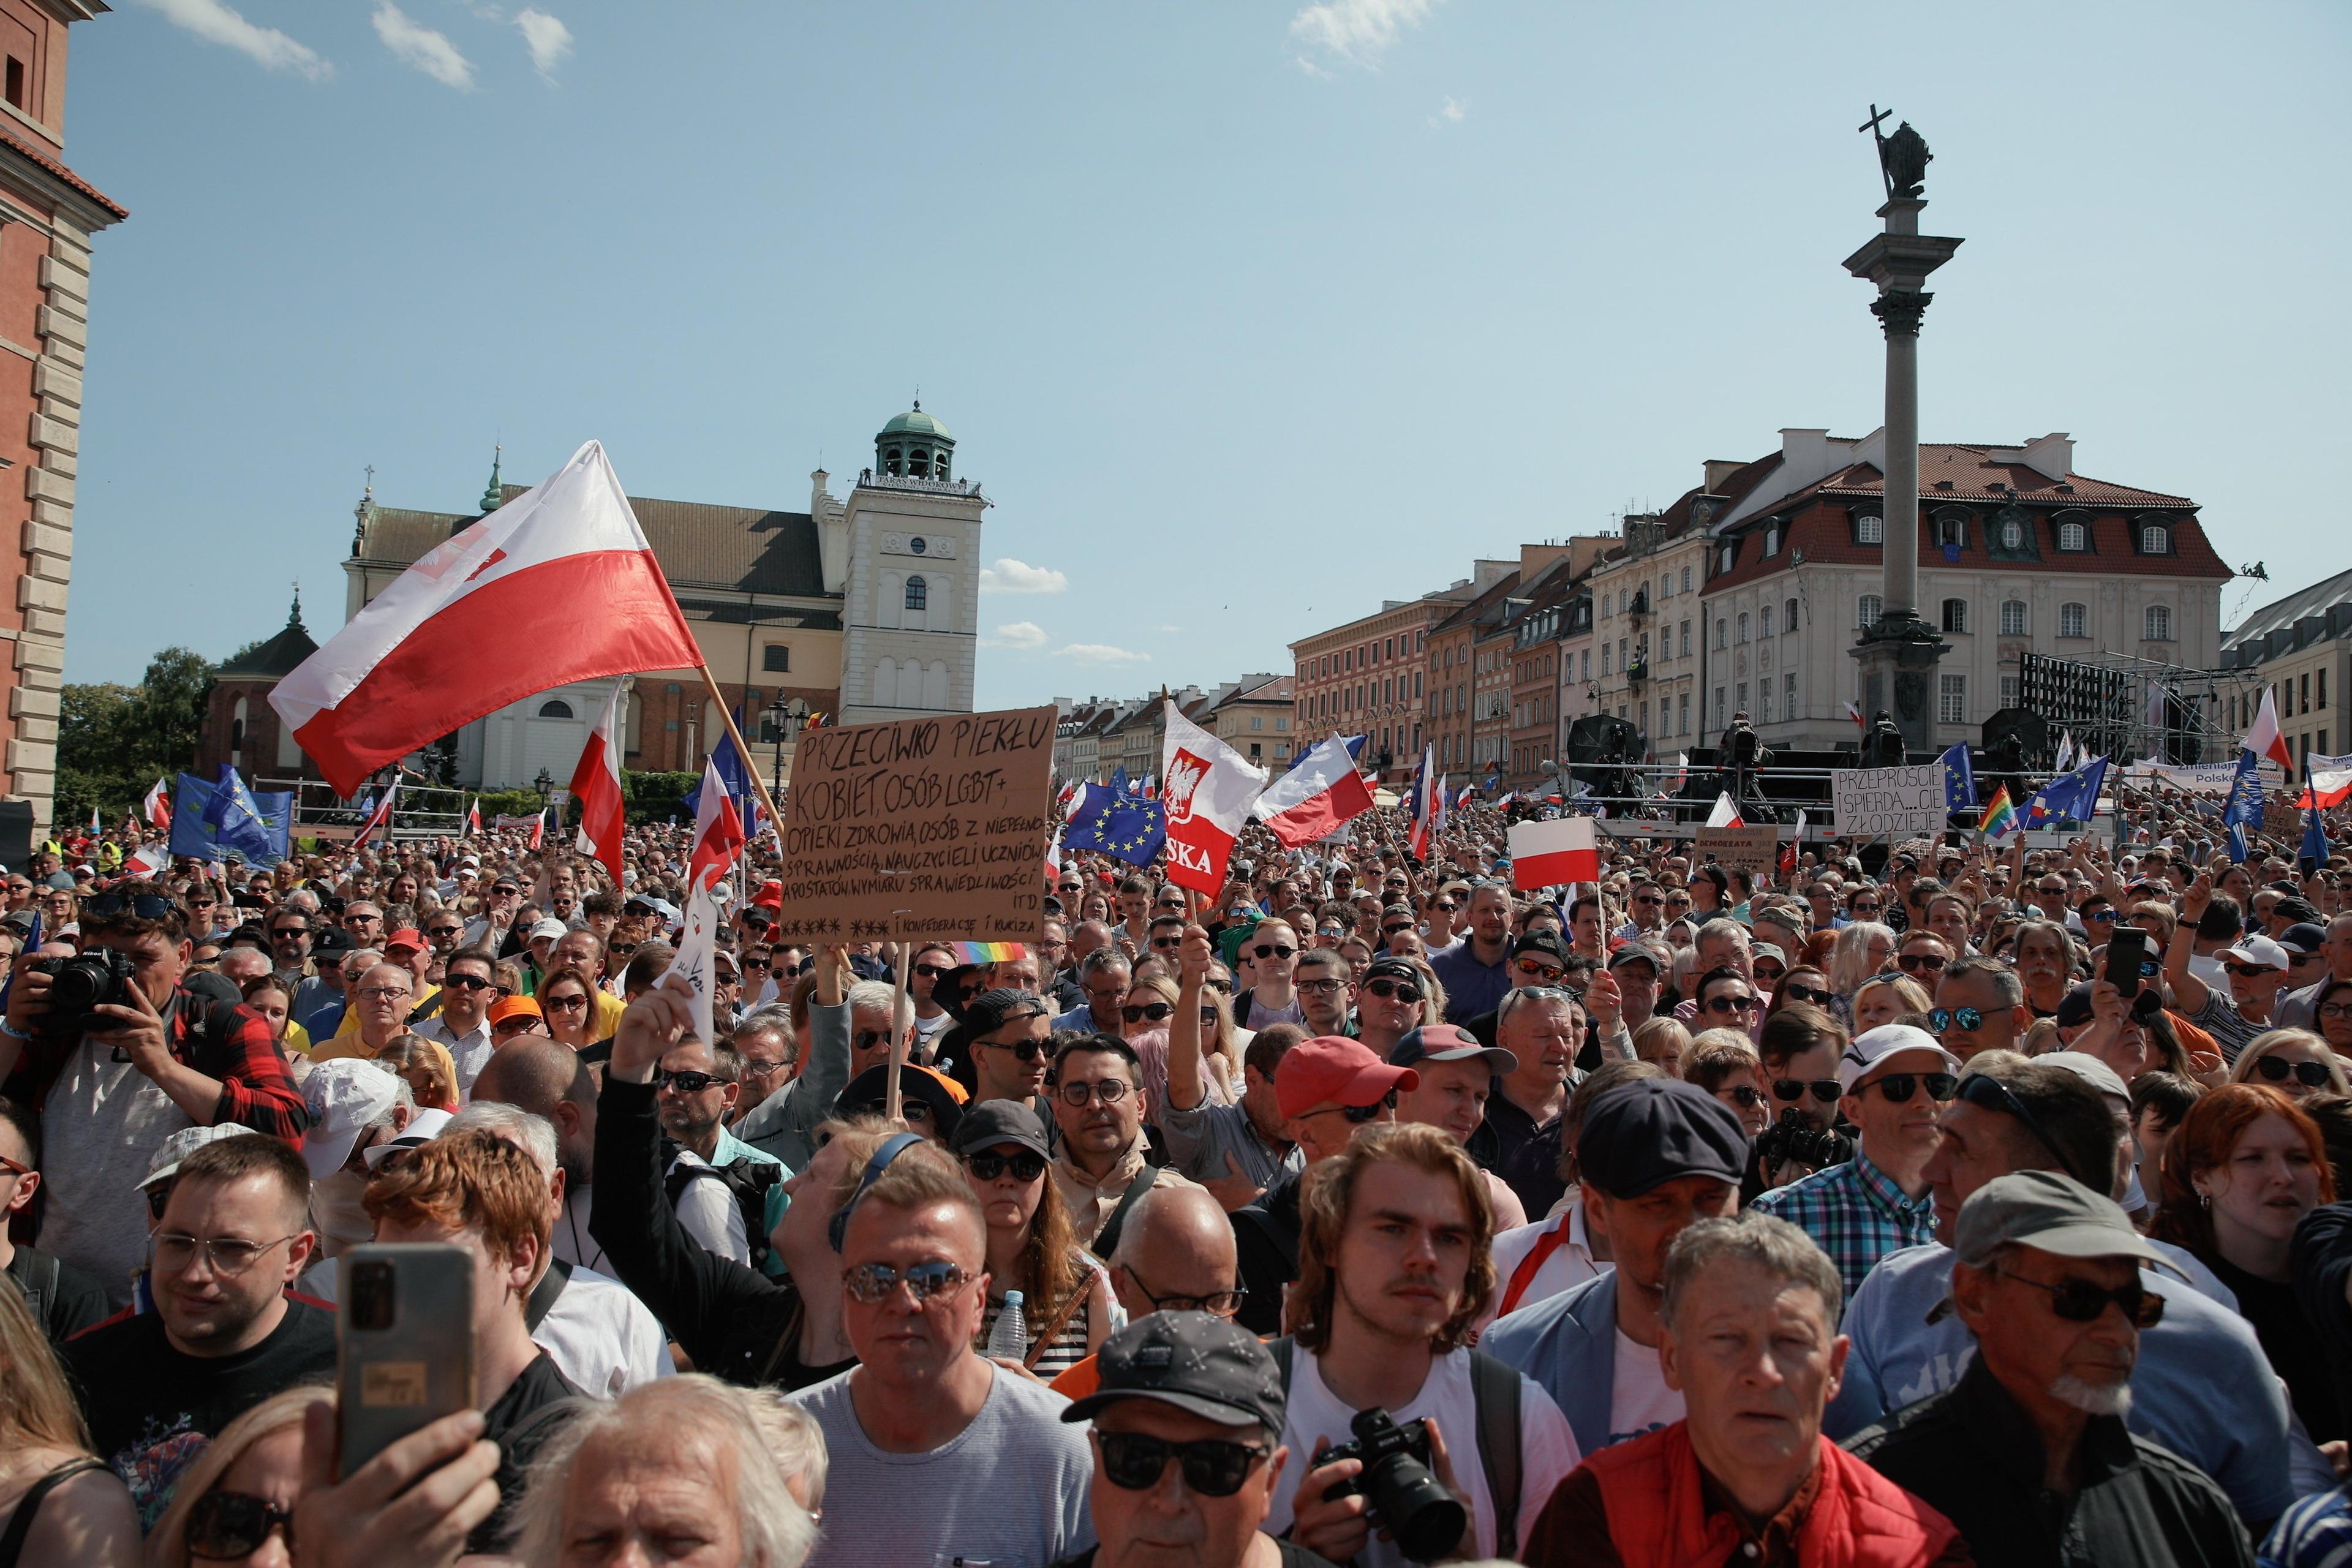 Tłum ludzi na placu Zamkowym (widać Kolumne Zygmunta). Mają biało-czerwone flagi